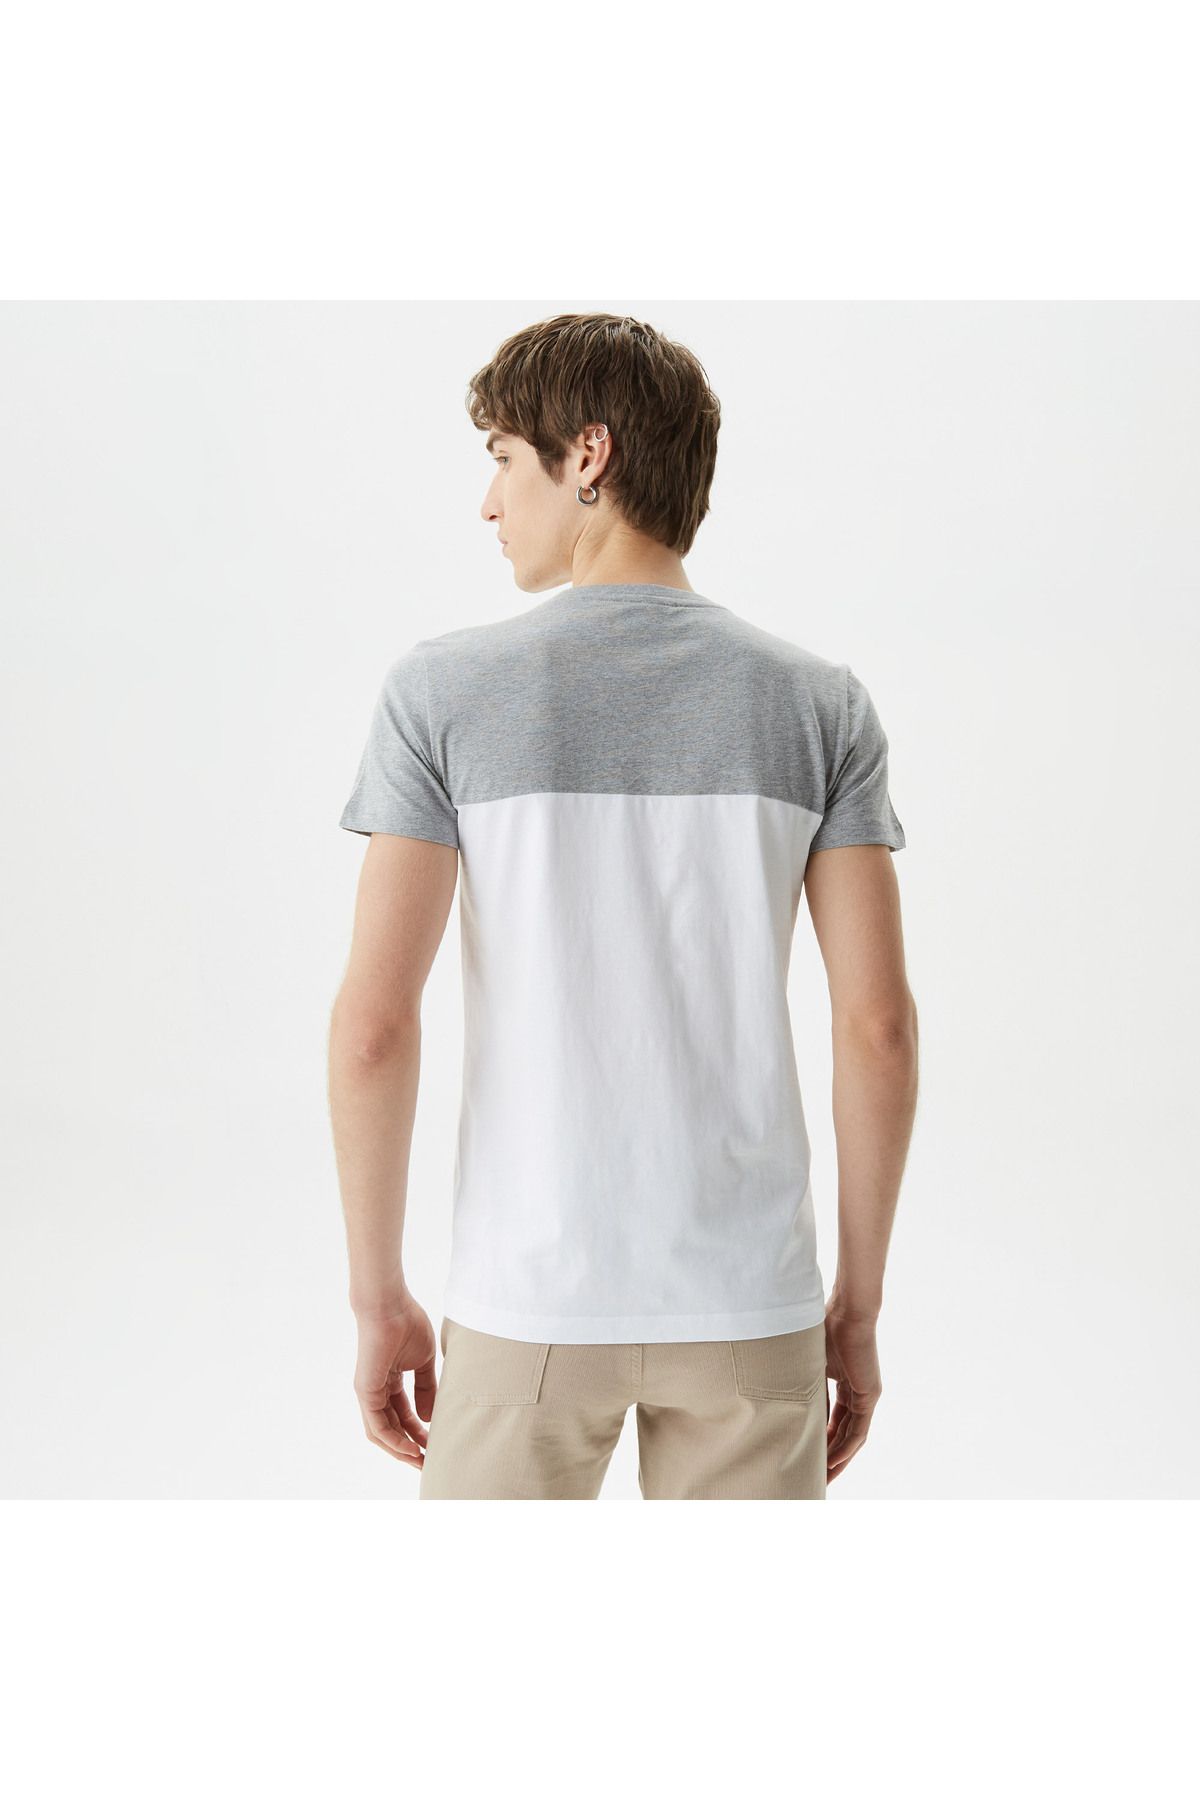 Lacoste تی شرت خاکستری بلوک رنگ یقه باریک مردانه